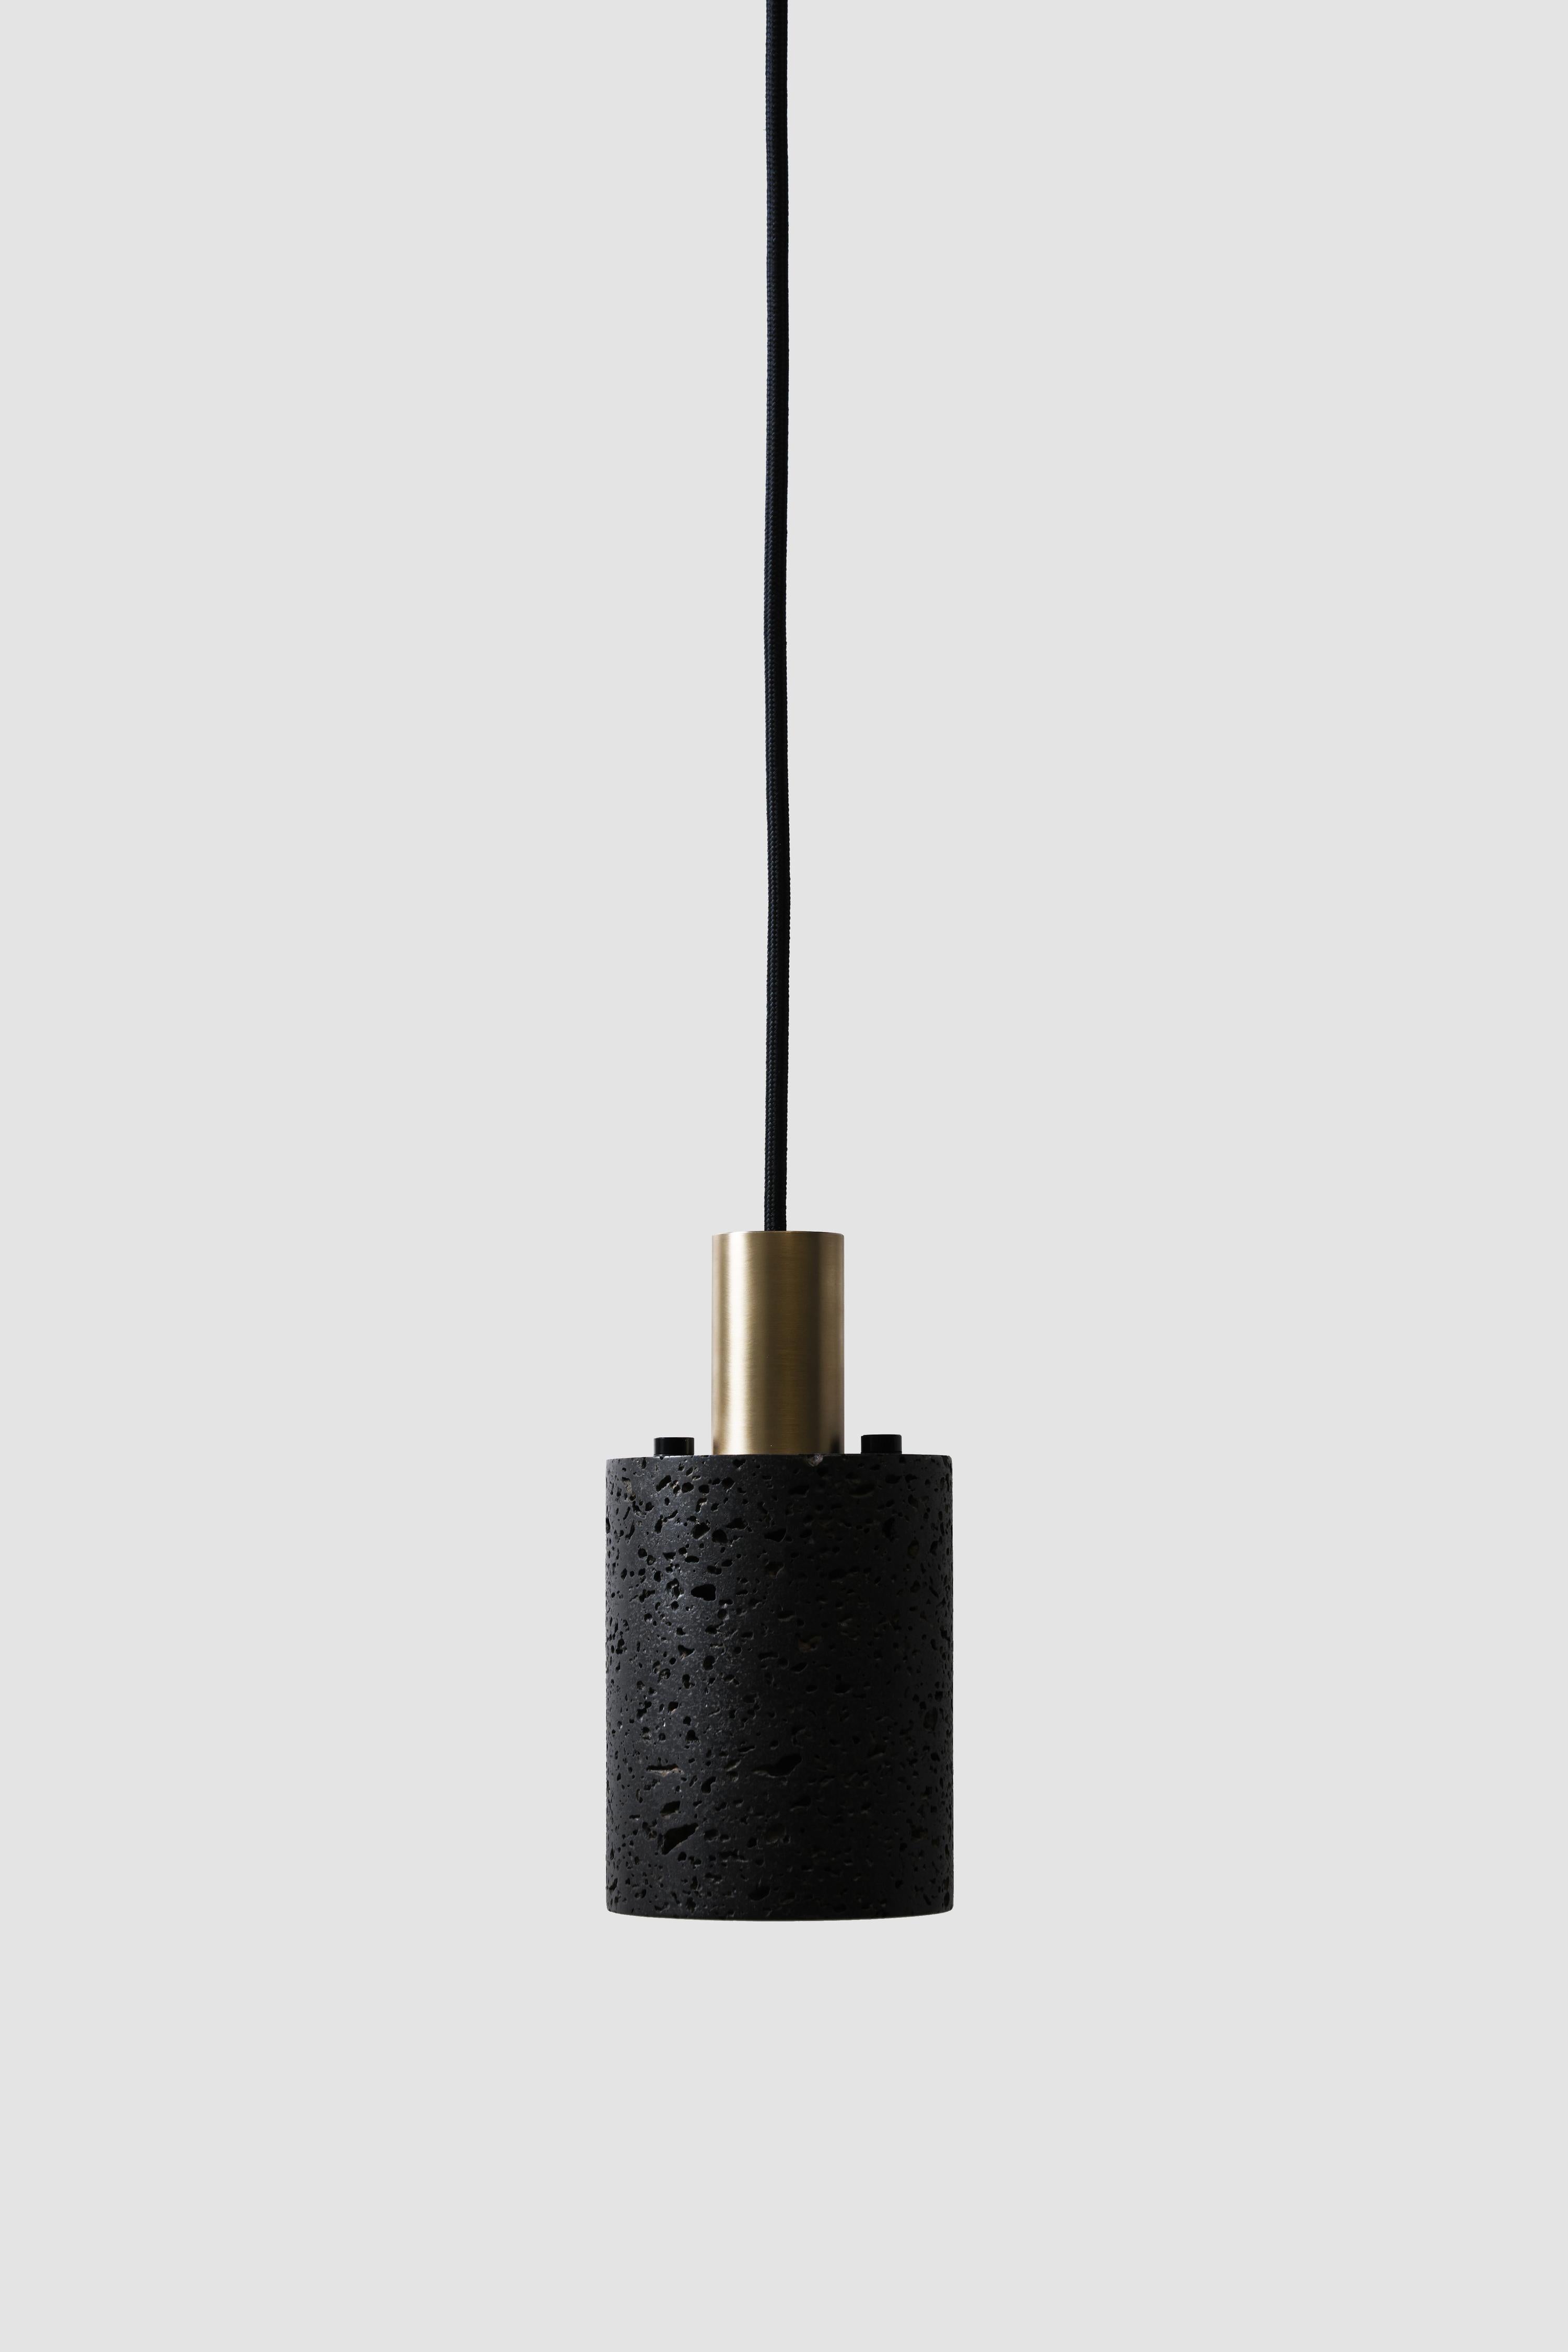 Hängeleuchten 'N' von Buzao x Bentu design.

Schwarzer Lavastein oder weißer Marmor
Schwarzes Finish (Aluminium oder Goldmessing)

(einzeln erhältlich)

19.5 cm hoch, 10 cm Durchmesser
Kabel: 2 Meter schwarz (einstellbar) 

Typ der Lampe: E27 LED 3W